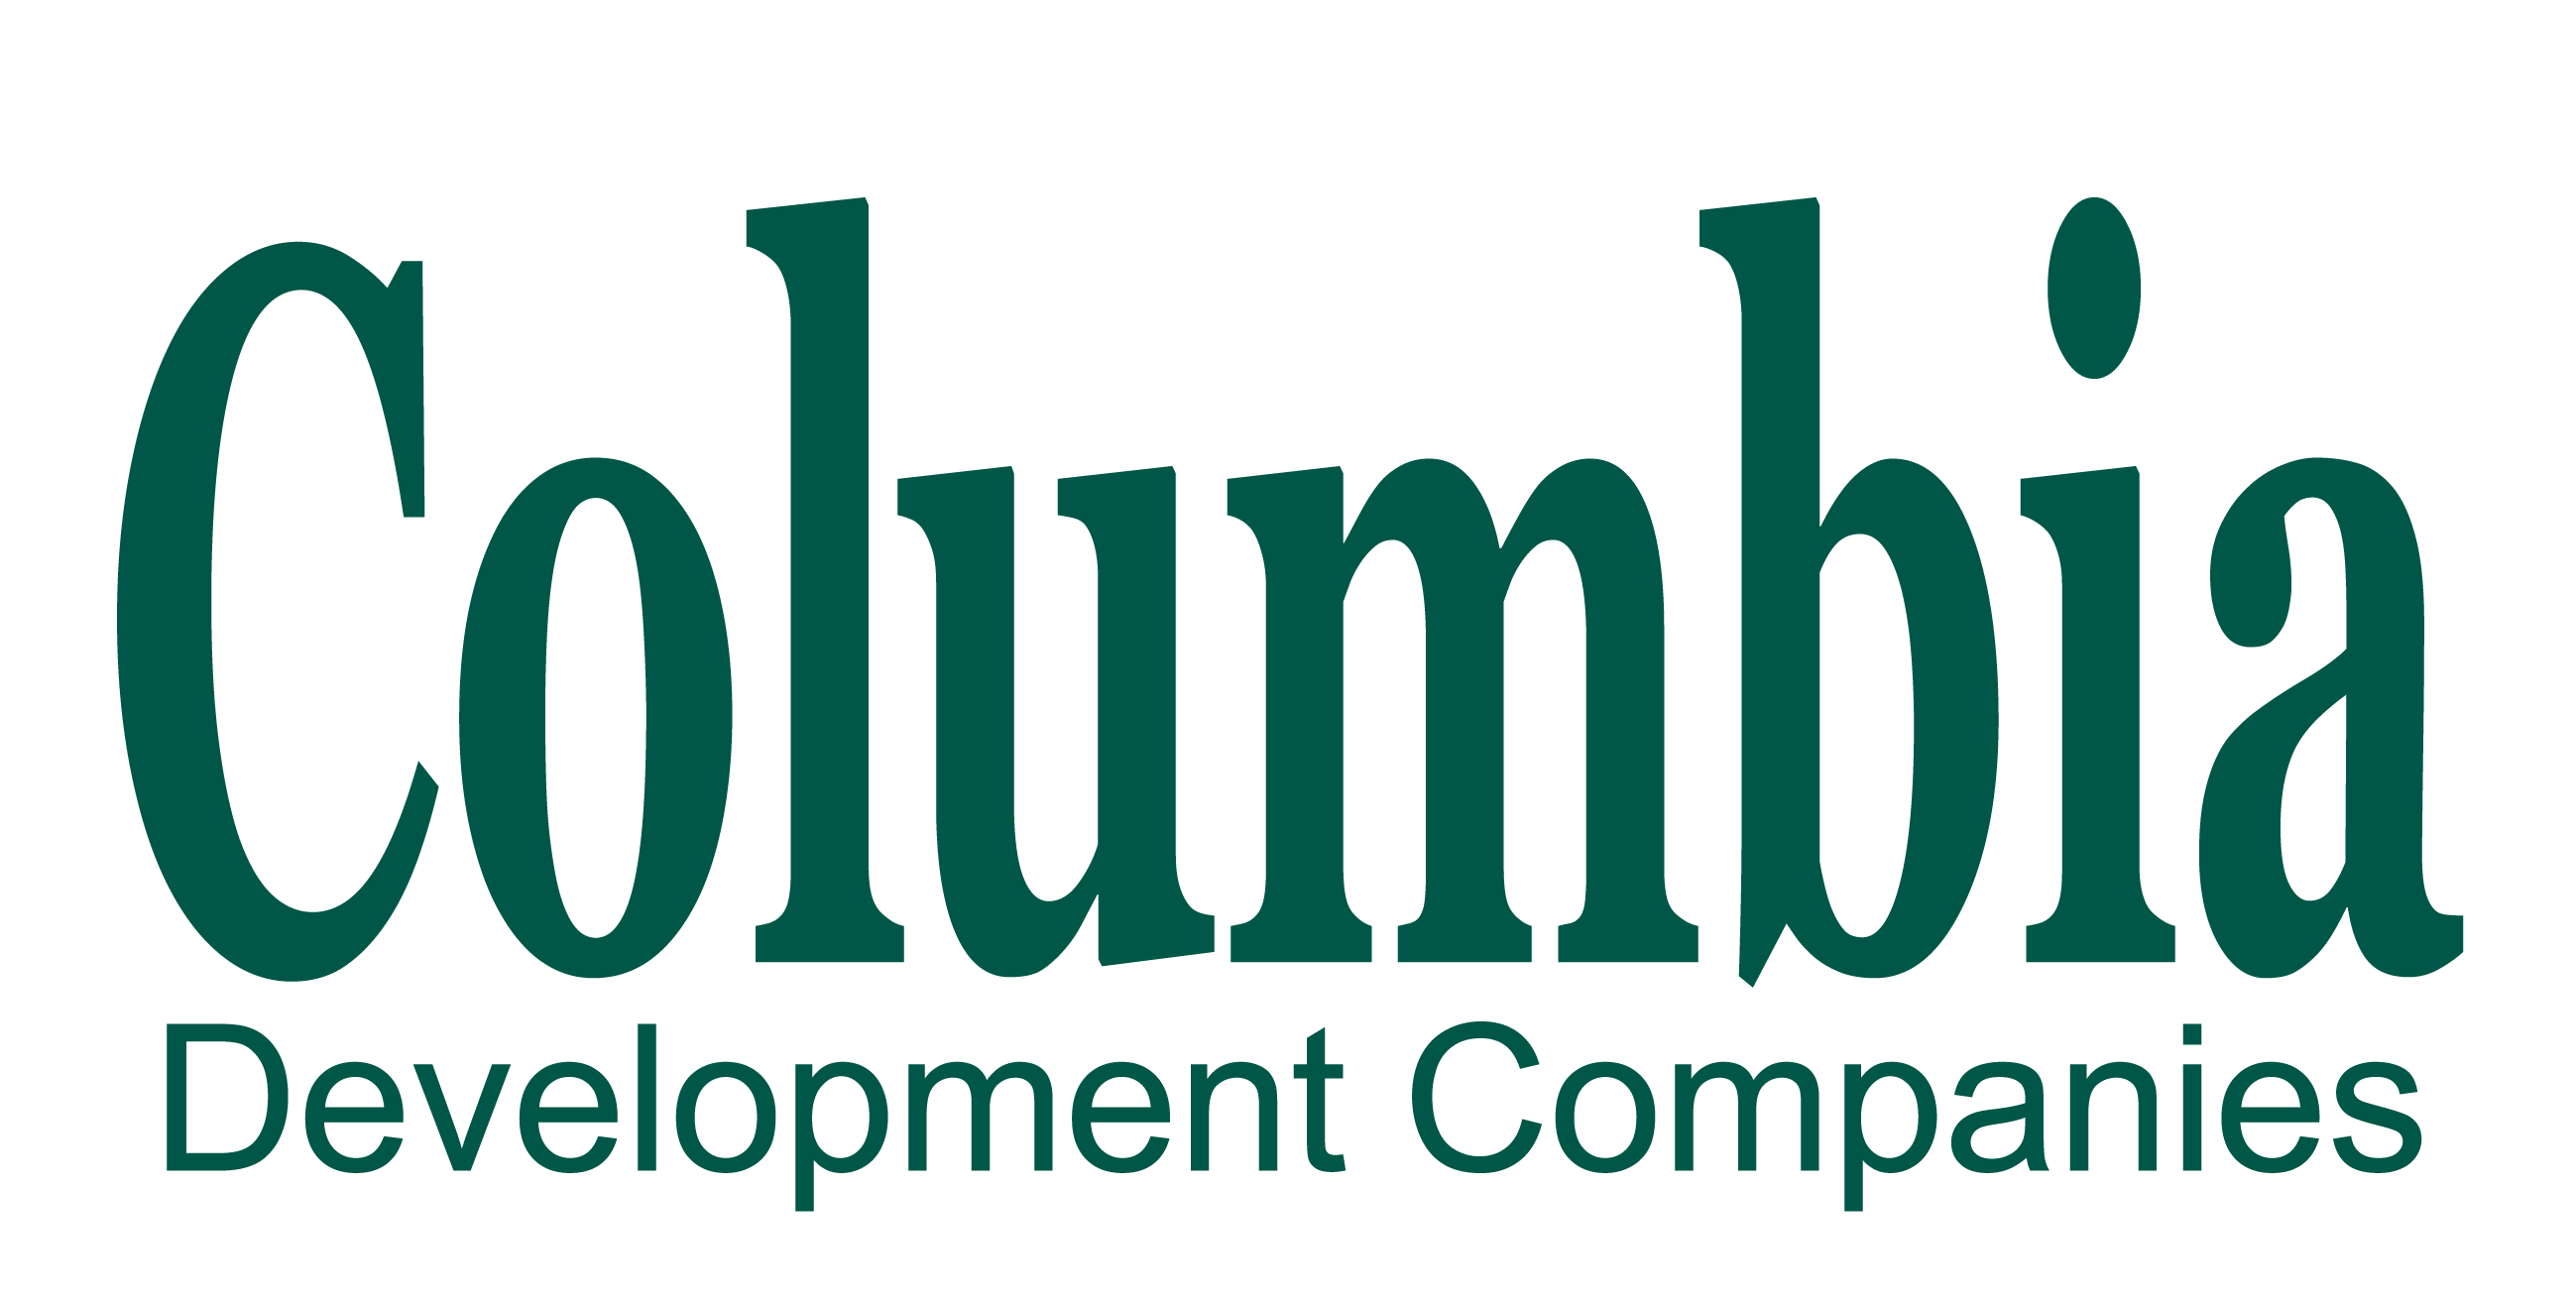 Columbia Development